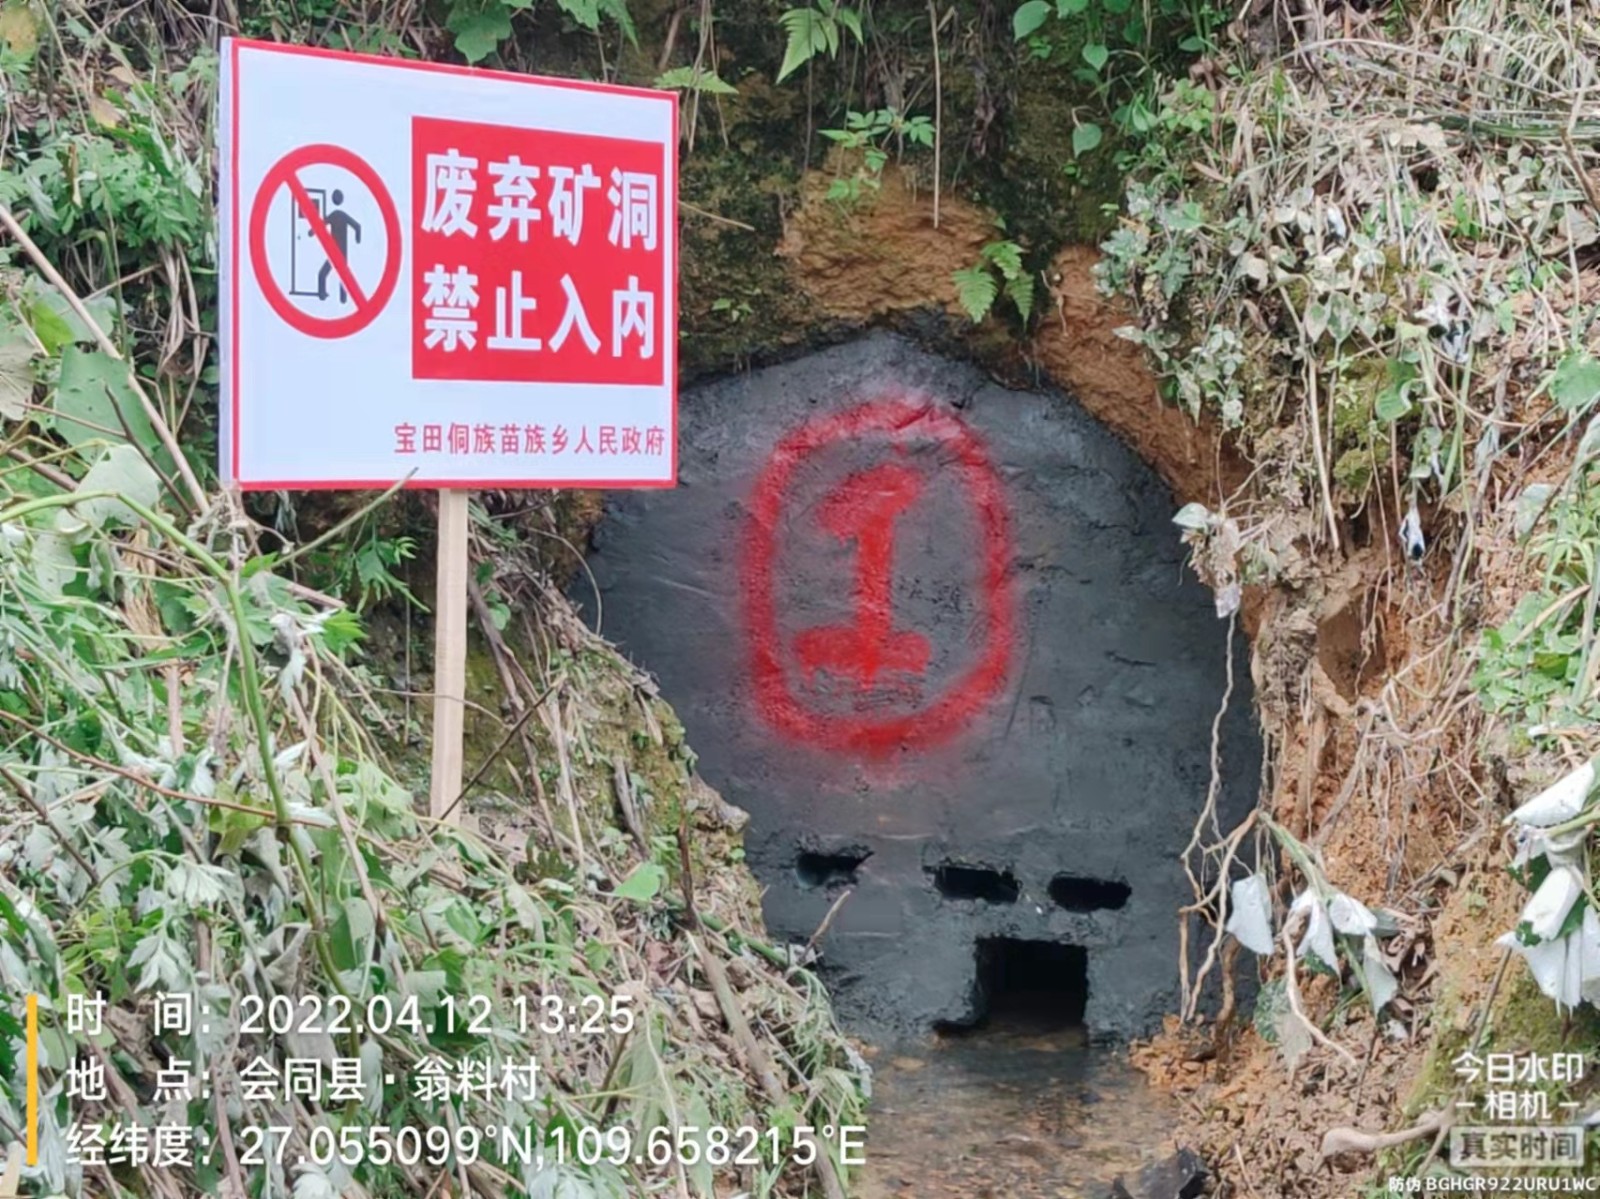 中国的第一长洞——遵义双河溶洞群|文章|中国国家地理网